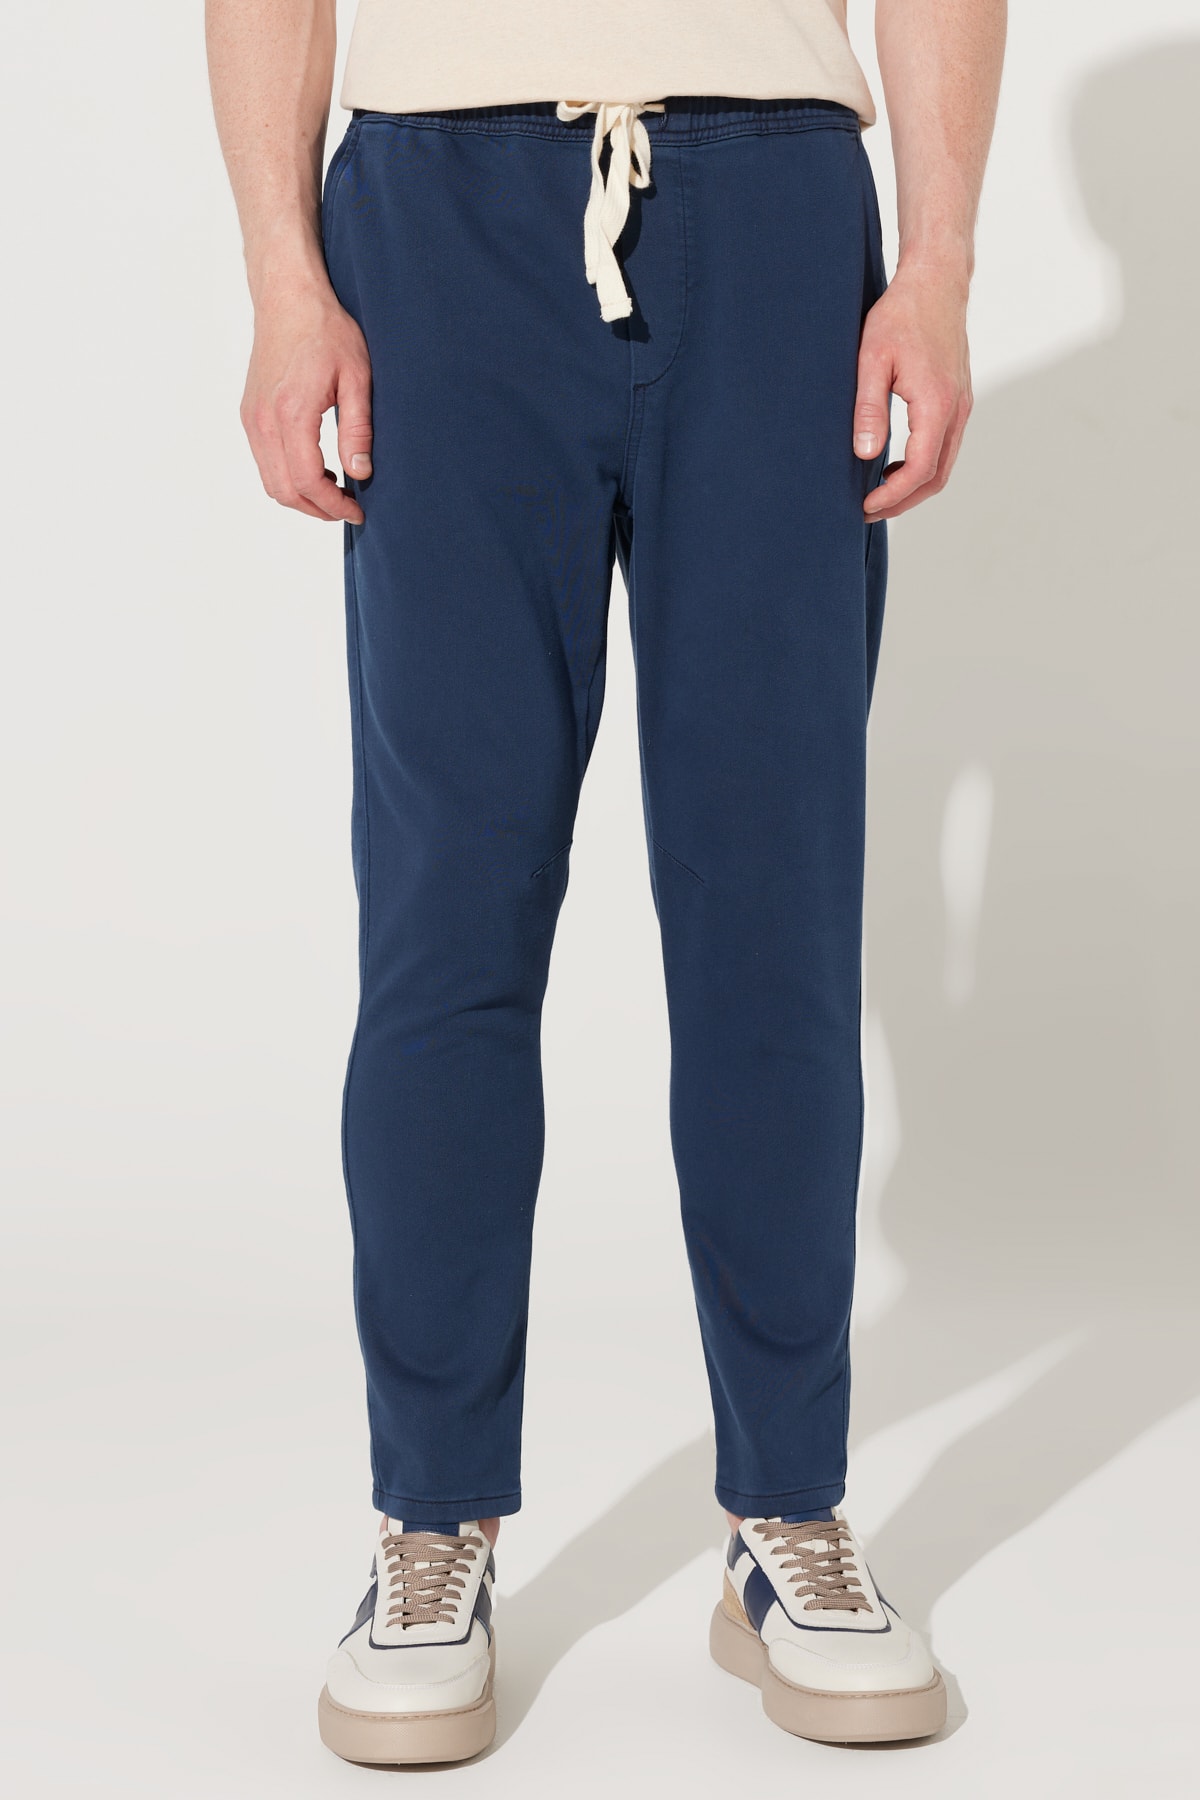 ALTINYILDIZ CLASSICS Men's Navy Blue Slim Fit Slim Fit Side Pocket Cotton Trousers